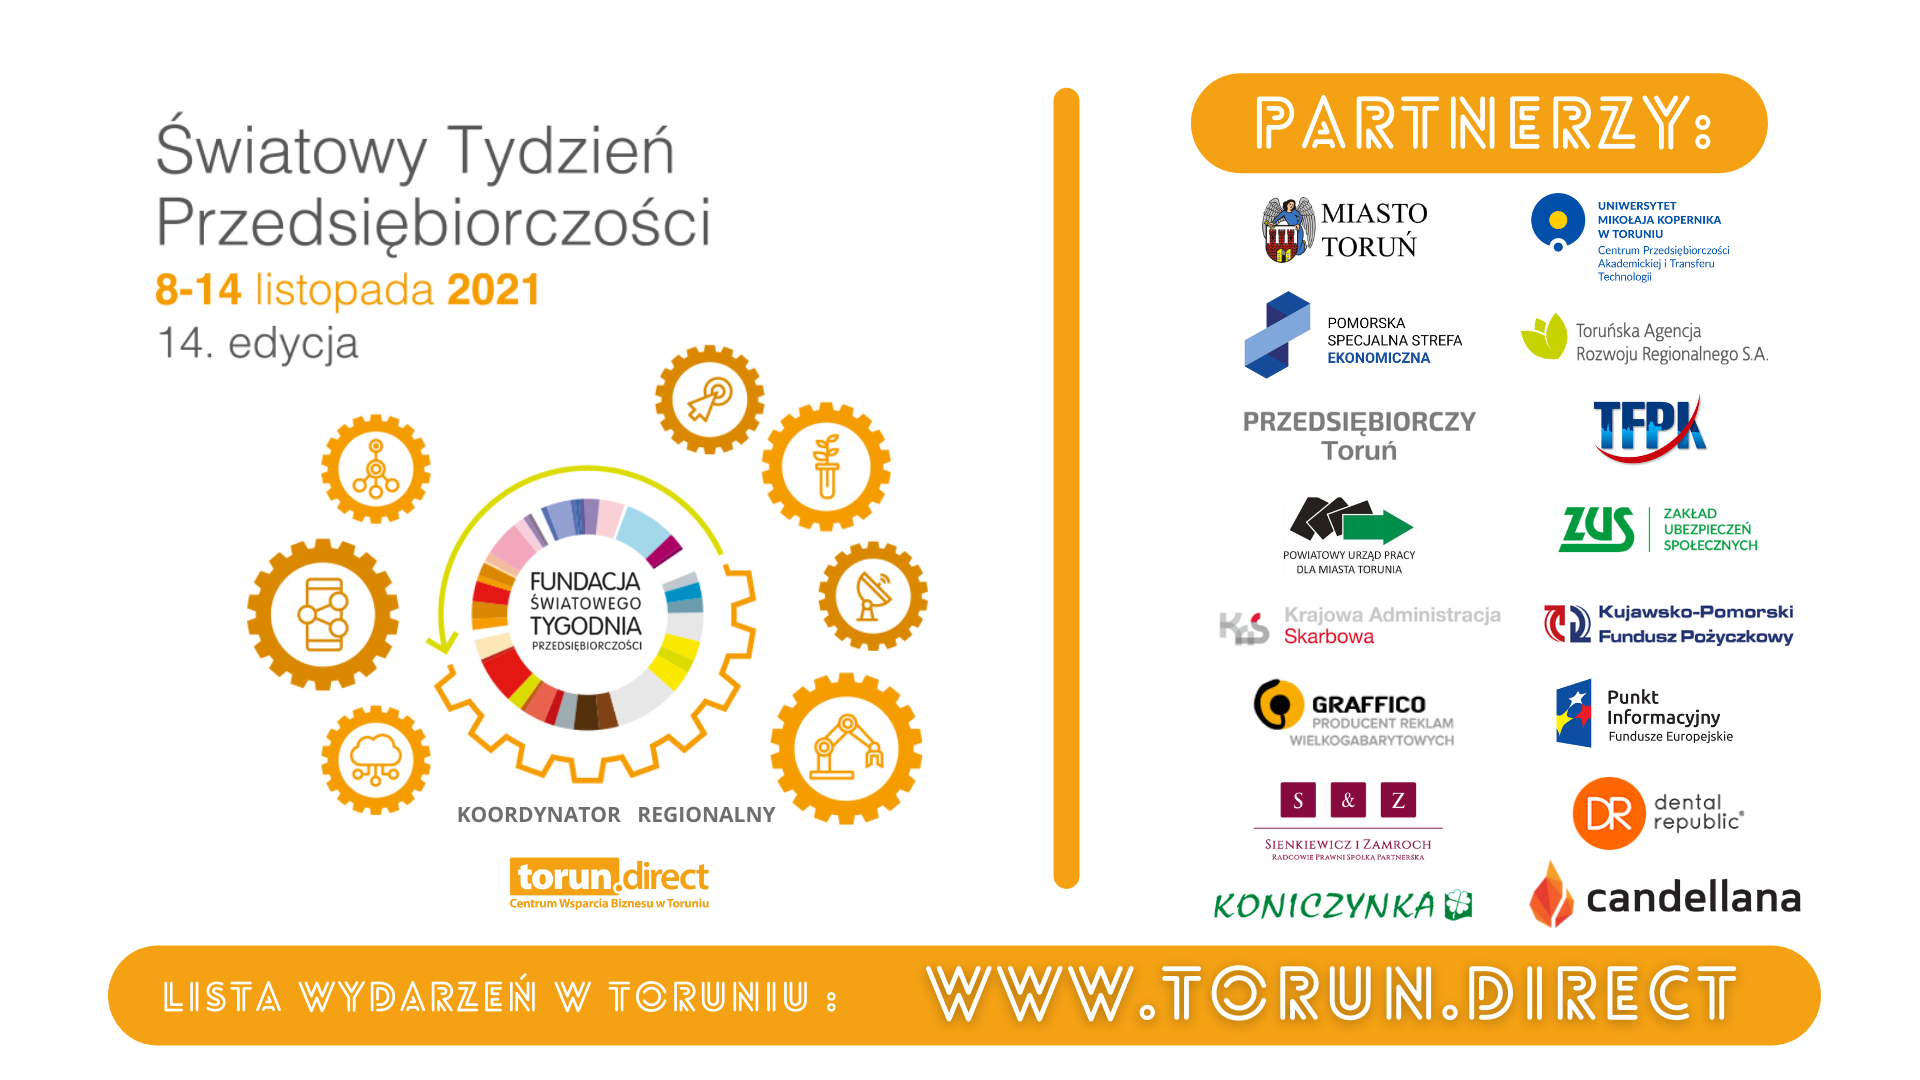 Światowy Tydzień Przedsiębiorczości Toruń